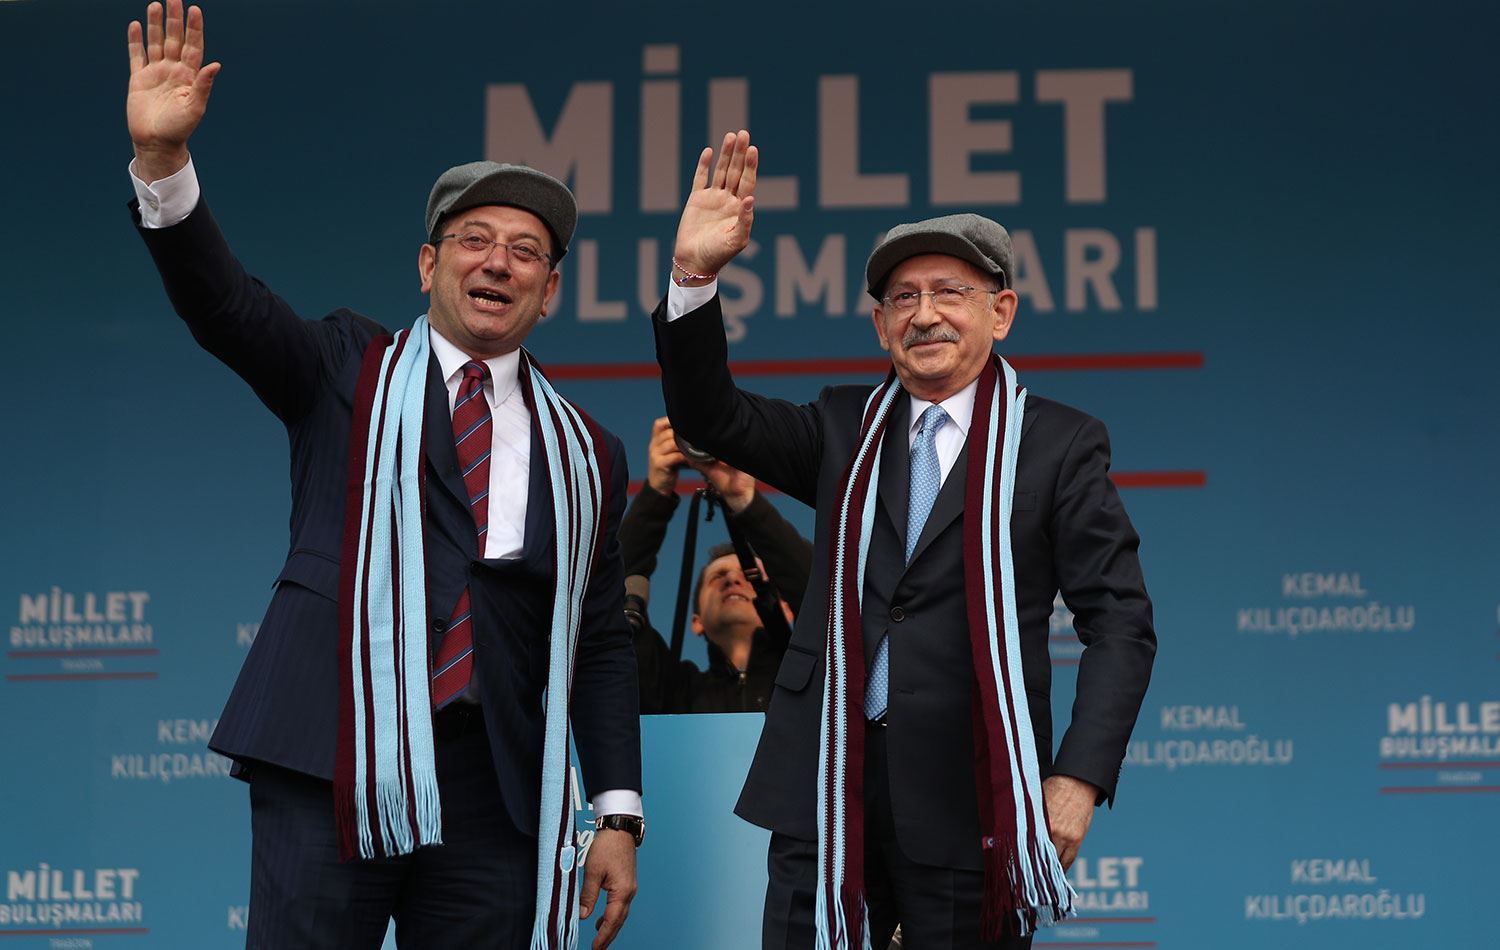 Tanıtım toplantısının en önemli eksikliği ise eski CHP Genel Başkanı Kemal Kılıçdaroğlu oldu.